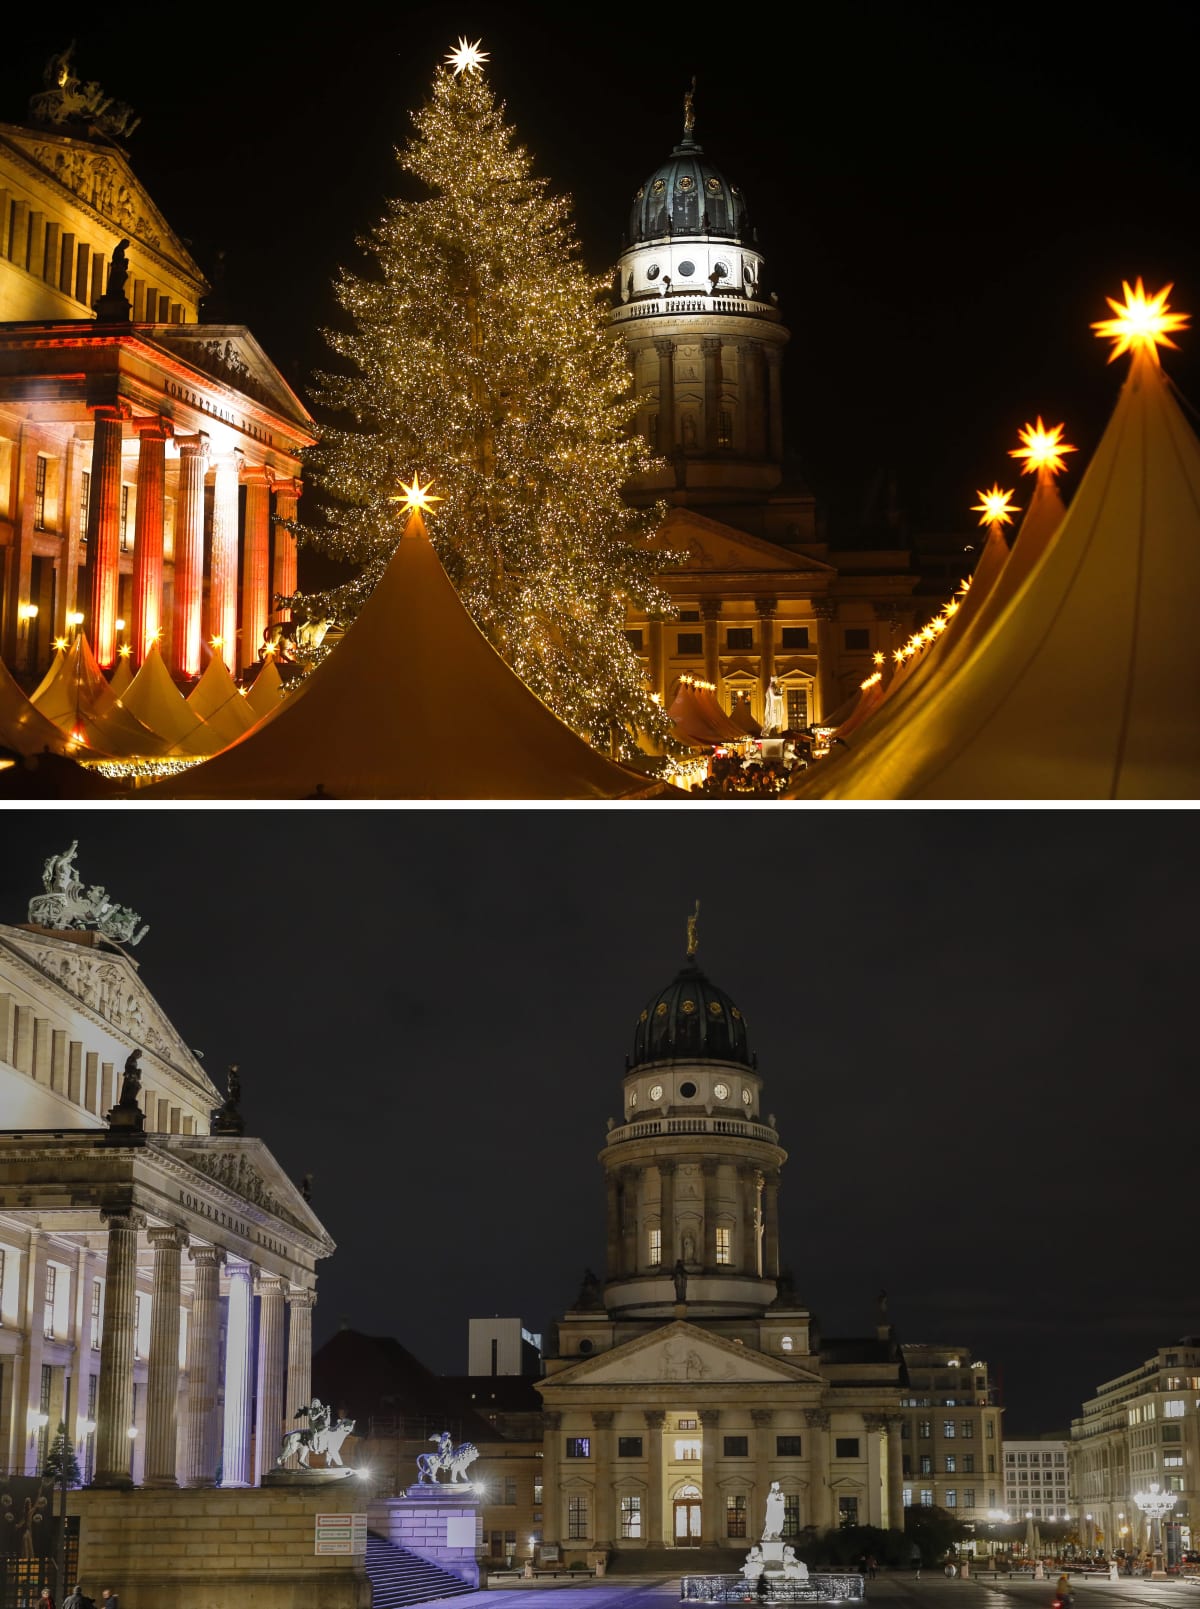 V hlavním městě Německa, v Berlíně, vánoční trhy obvykle osvětlují náměstí Gendarmenmarkt. Letos zde ale není ani jedna ozdoba.